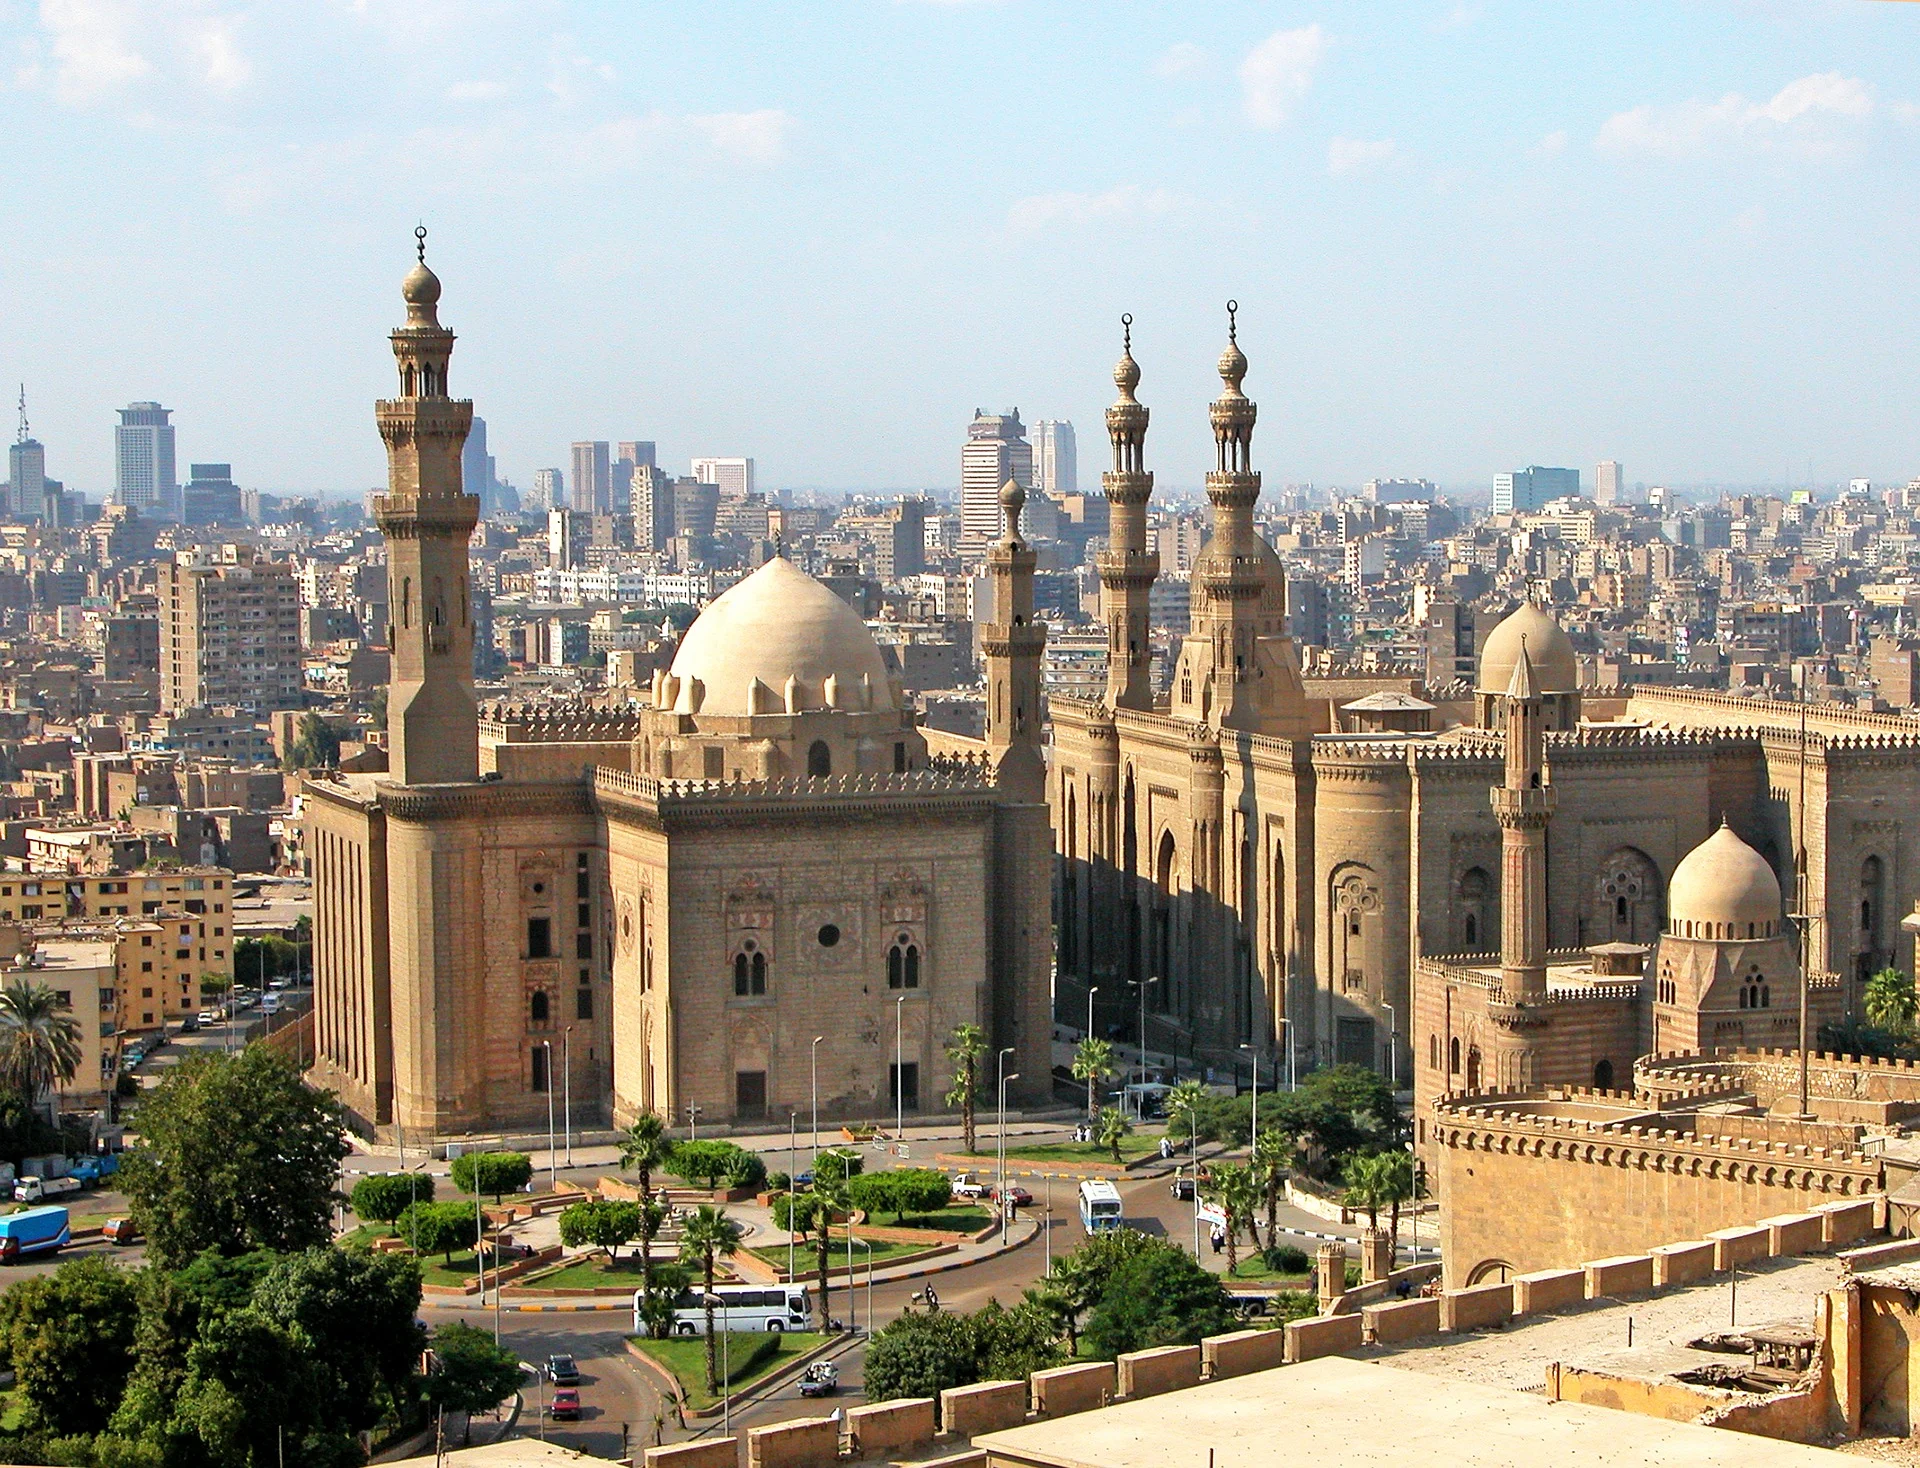 ТОП-10 найкращих міст для туризму в 2020 році - Каїр, Єгипет - фото 455147